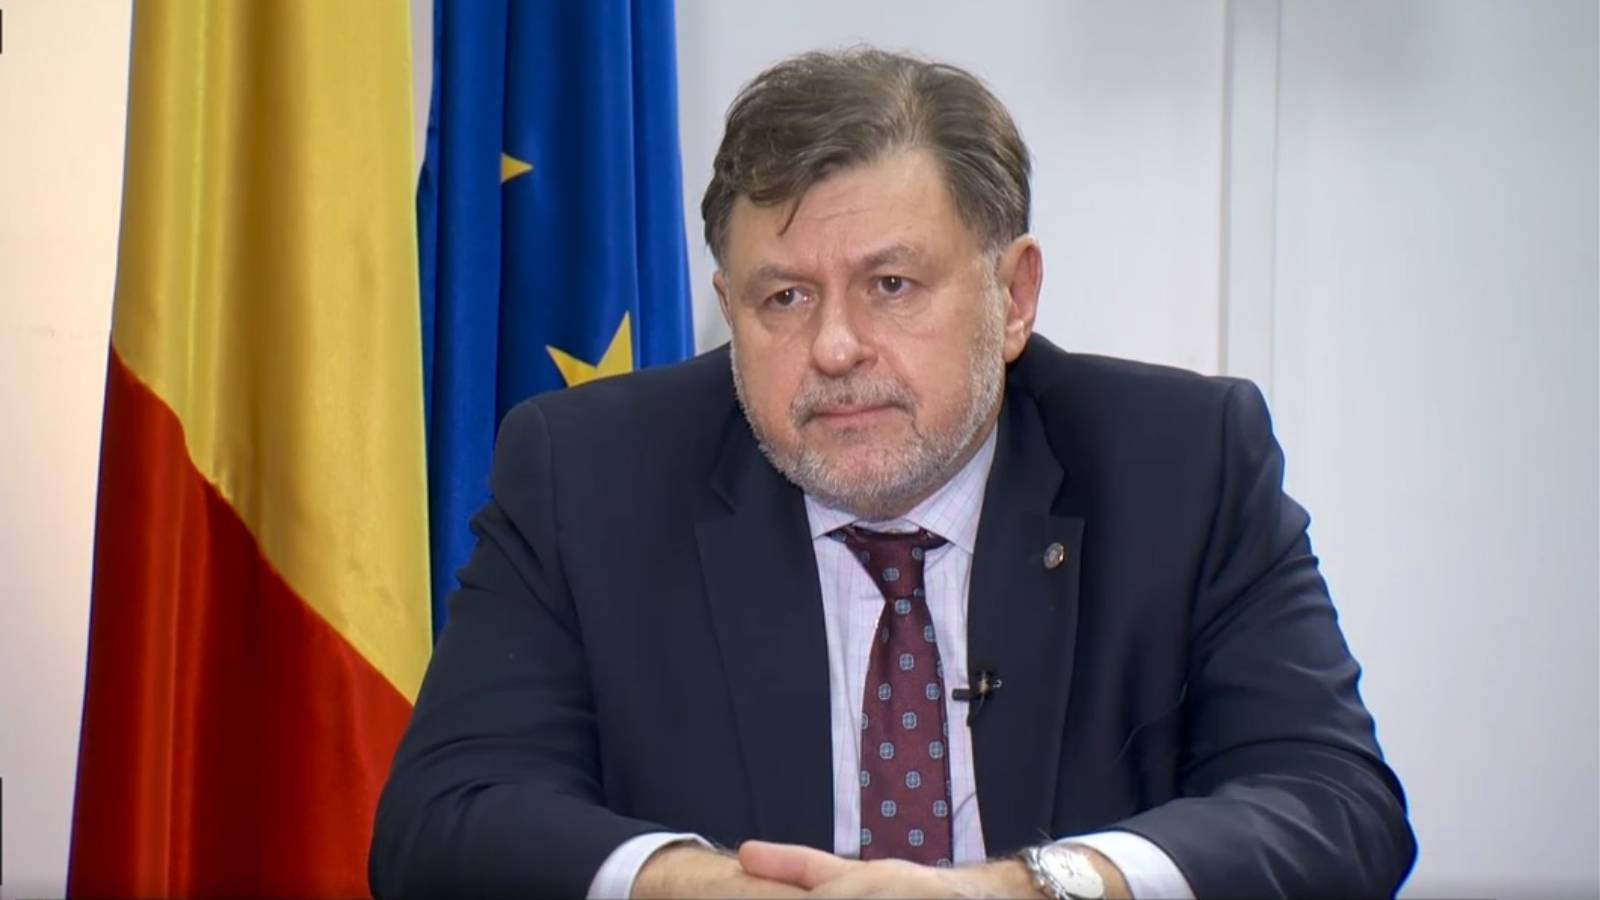 Arrêté du ministre de la Santé DERNIÈRE MINUTE Mesures importantes annoncées aux Roumains